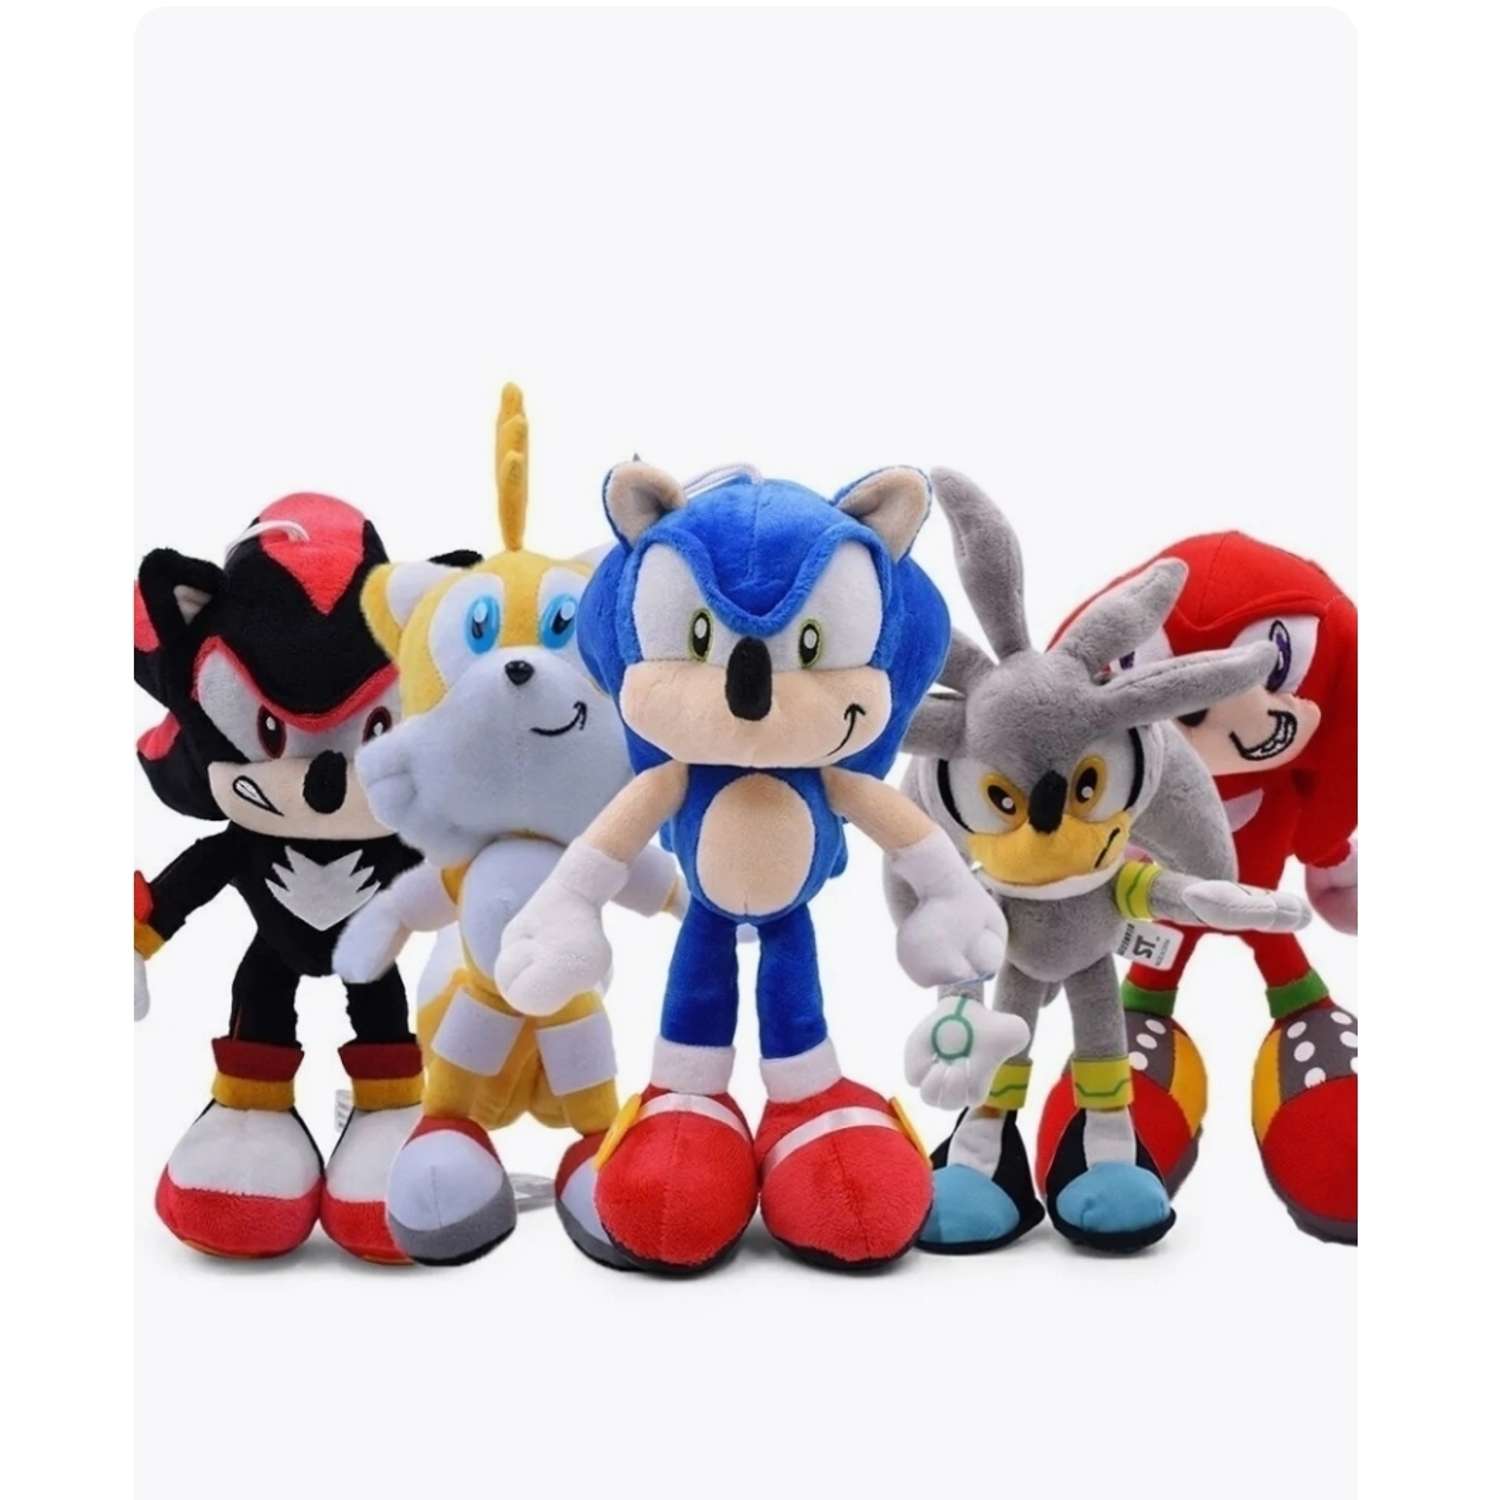 Фигурки и игрушки Sonic the Hedgehog (Соник)